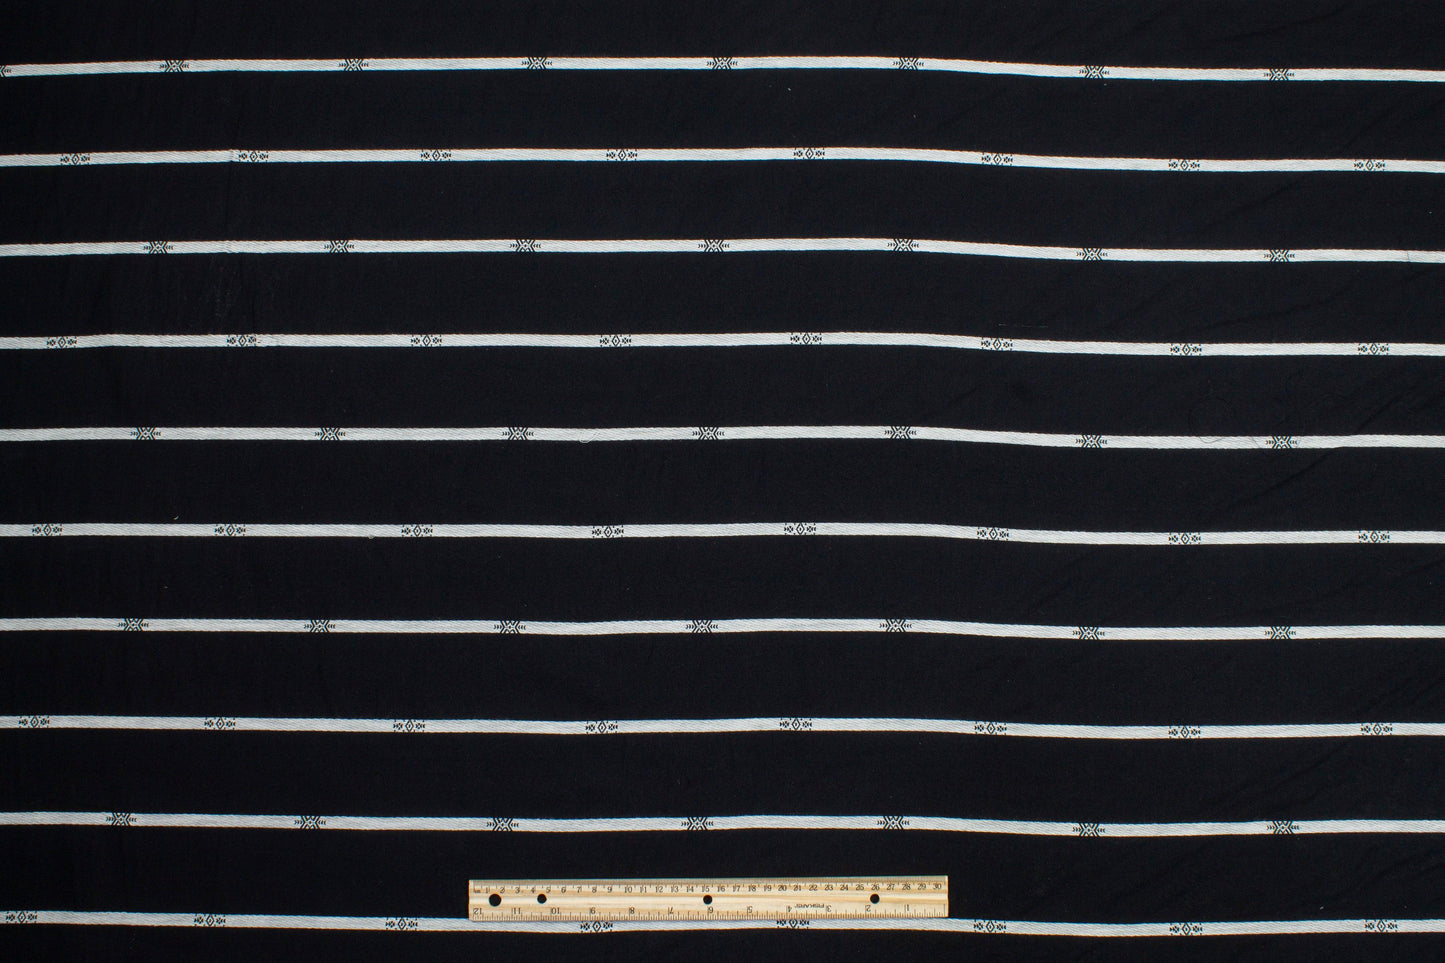 Striped Cotton Voile - Black and Off White - Prime Fabrics